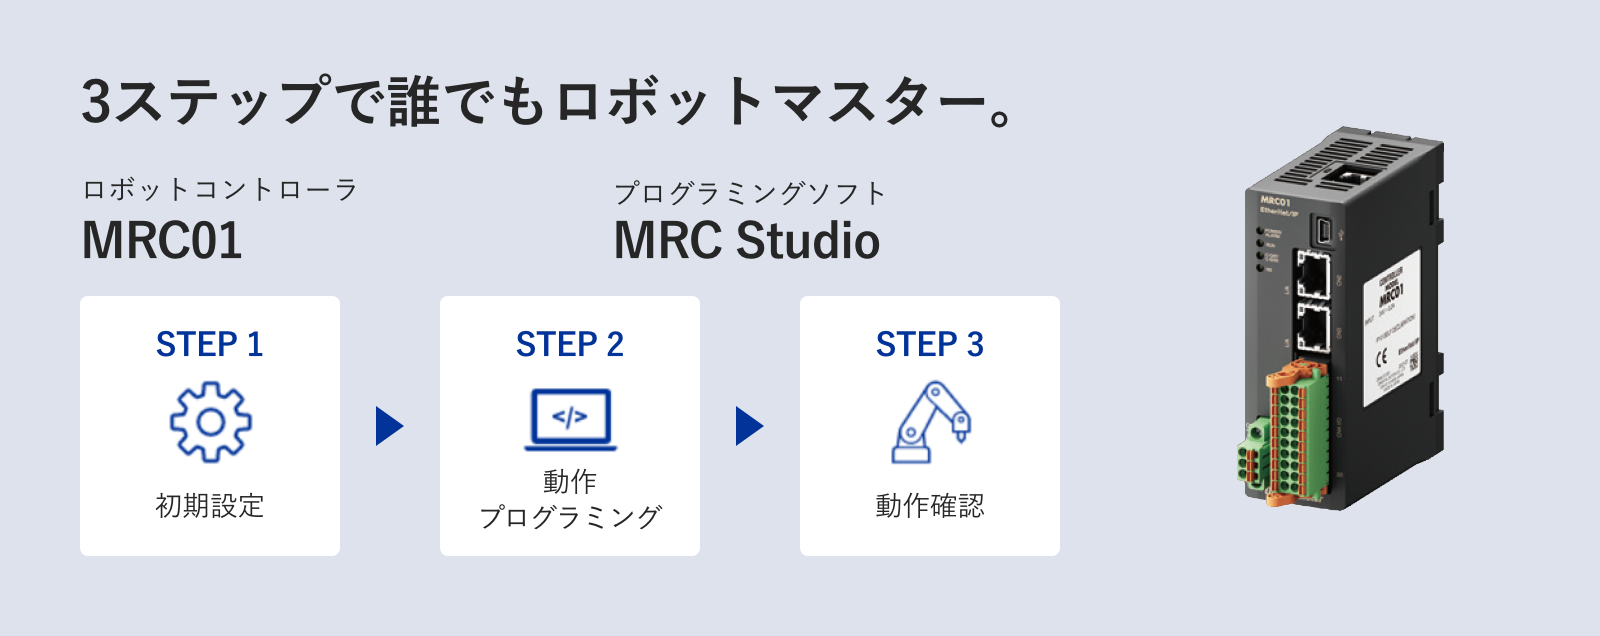 3ステップで誰でもロボットマスター。 MRC01, MRC Studio STEP1 初期設定→STEP2 動作プログラミング→STEP3 動作確認 詳しく見る